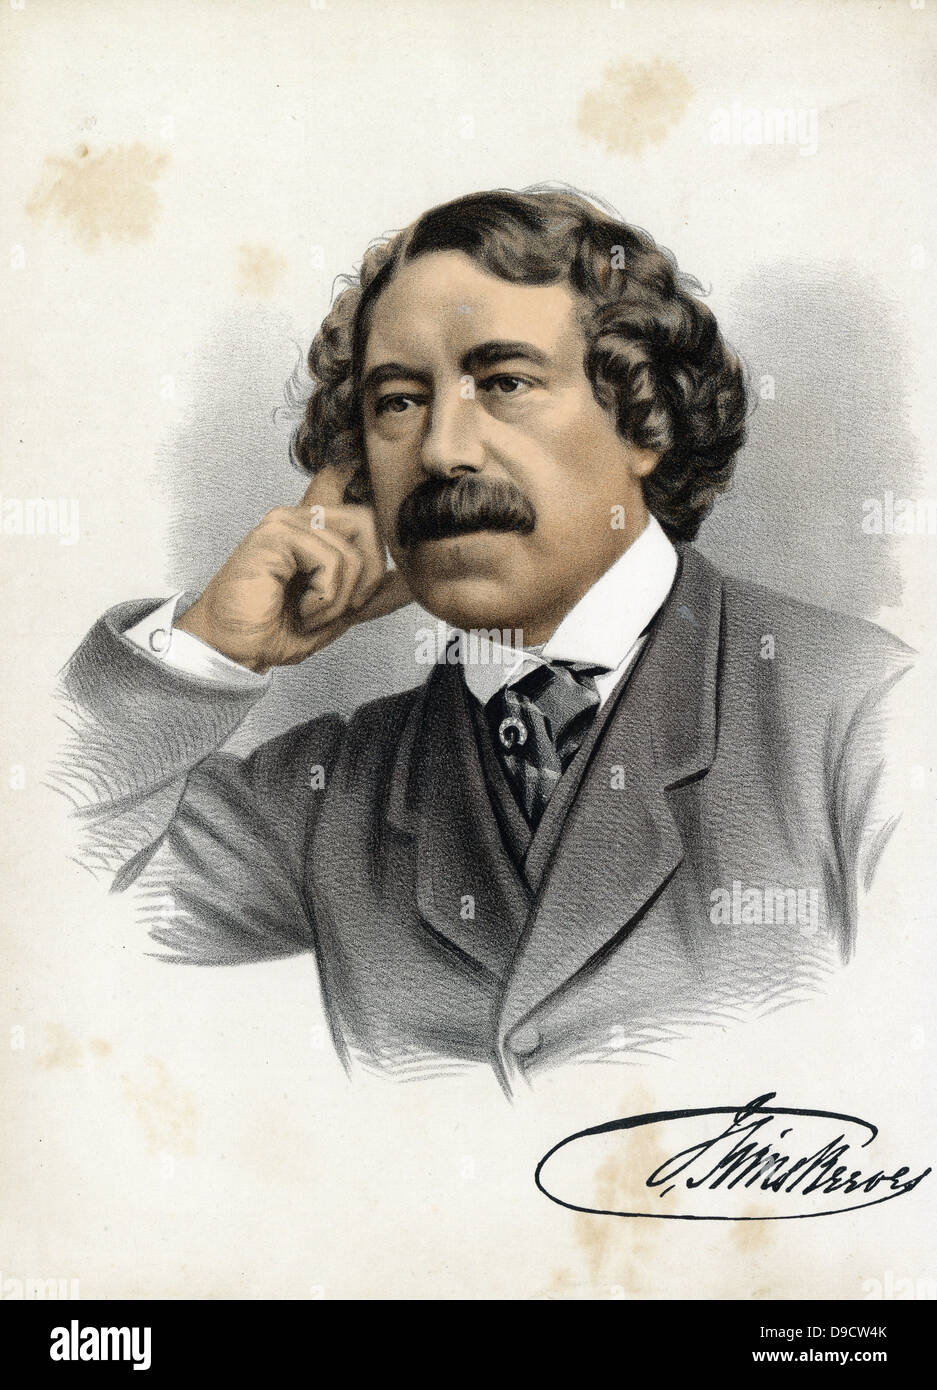 (John) Sims Reeves (1821-1900) die führende englische Oper, Oratorium und Konzert Tenor seiner Zeit. Seine Karriere dauerte von ungefähr 1839 bis 1891. Im späteren Leben taucht er und schrieb über das Singen. Getönte Lithographie, c 1880. Stockfoto